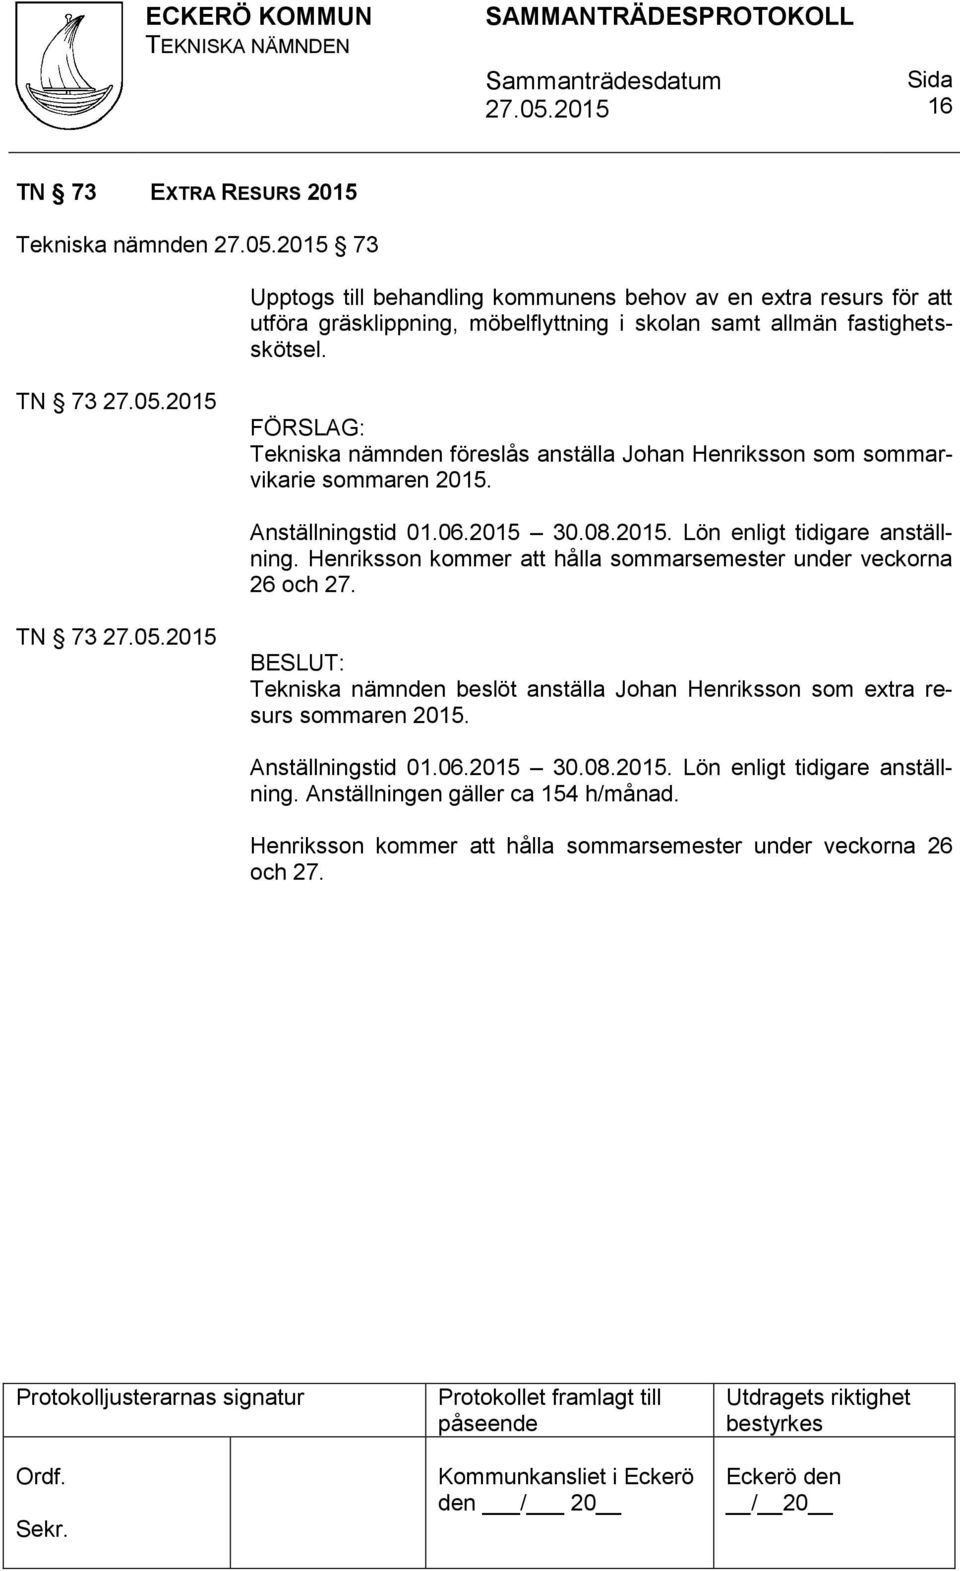 Henriksson kommer att hålla sommarsemester under veckorna 26 och 27. TN 73 Tekniska nämnden beslöt anställa Johan Henriksson som extra resurs sommaren 2015.